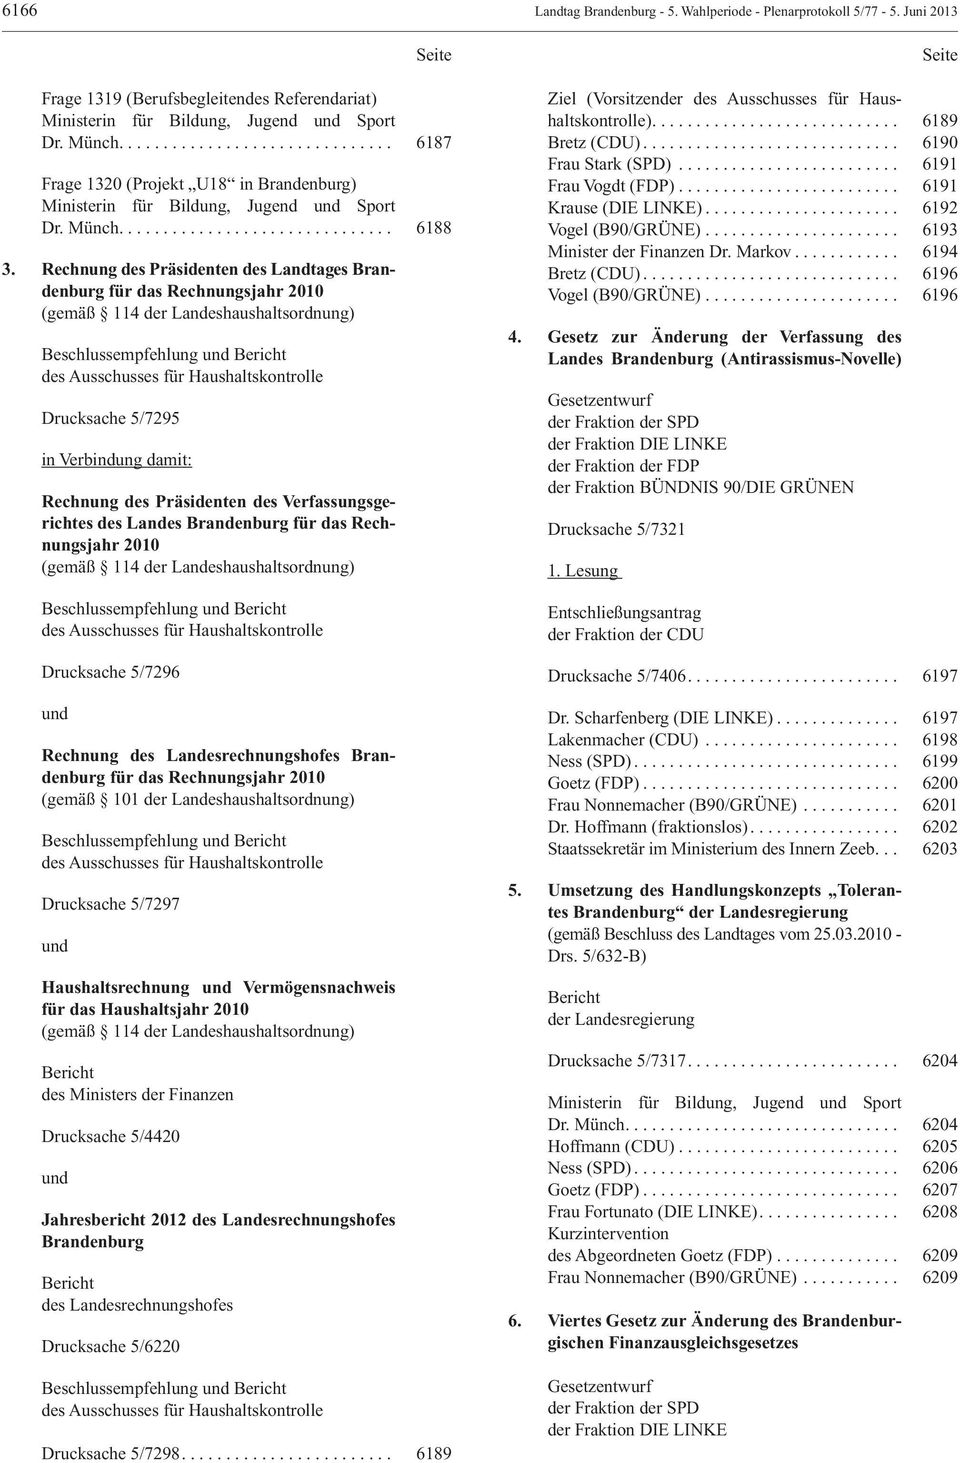 Rechnung des Präsidenten des Landtages Brandenburg für das Rechnungsjahr 2010 (gemäß 114 der Landeshaushaltsordnung) Beschlussempfehlung und Bericht des Ausschusses für Haushaltskontrolle Drucksache